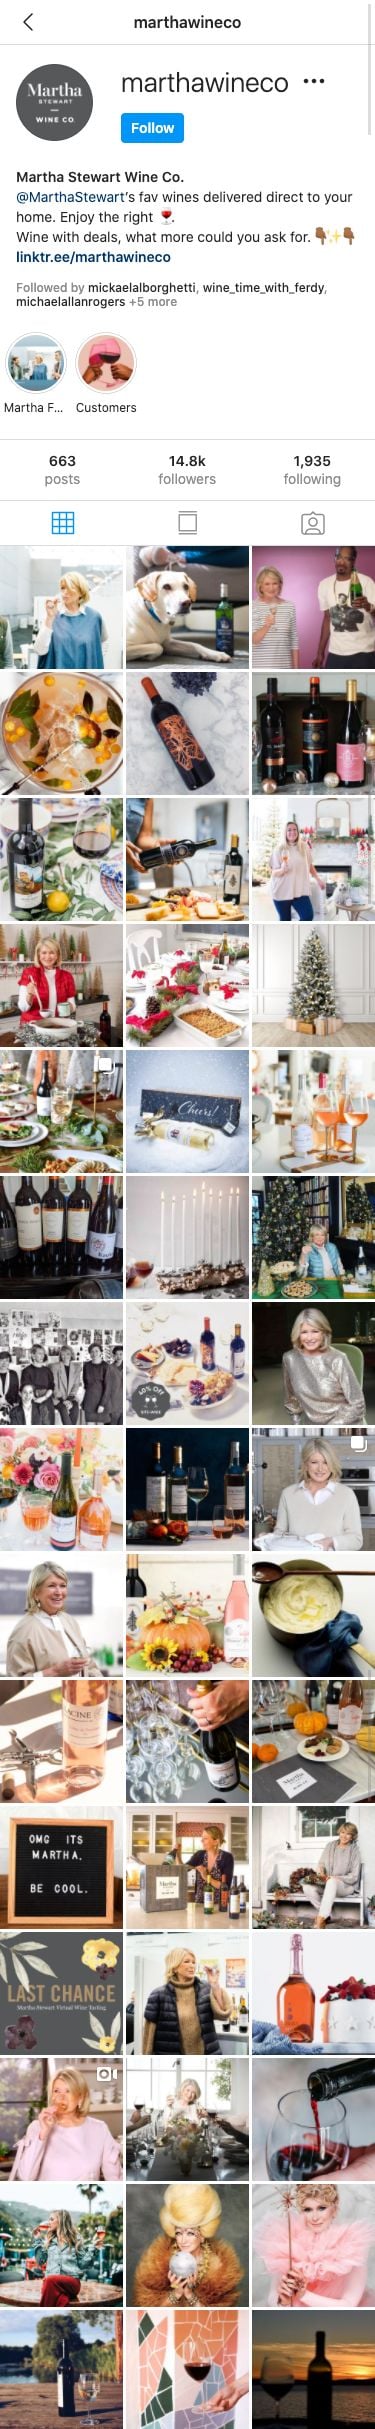 martha stewart wine co instagram